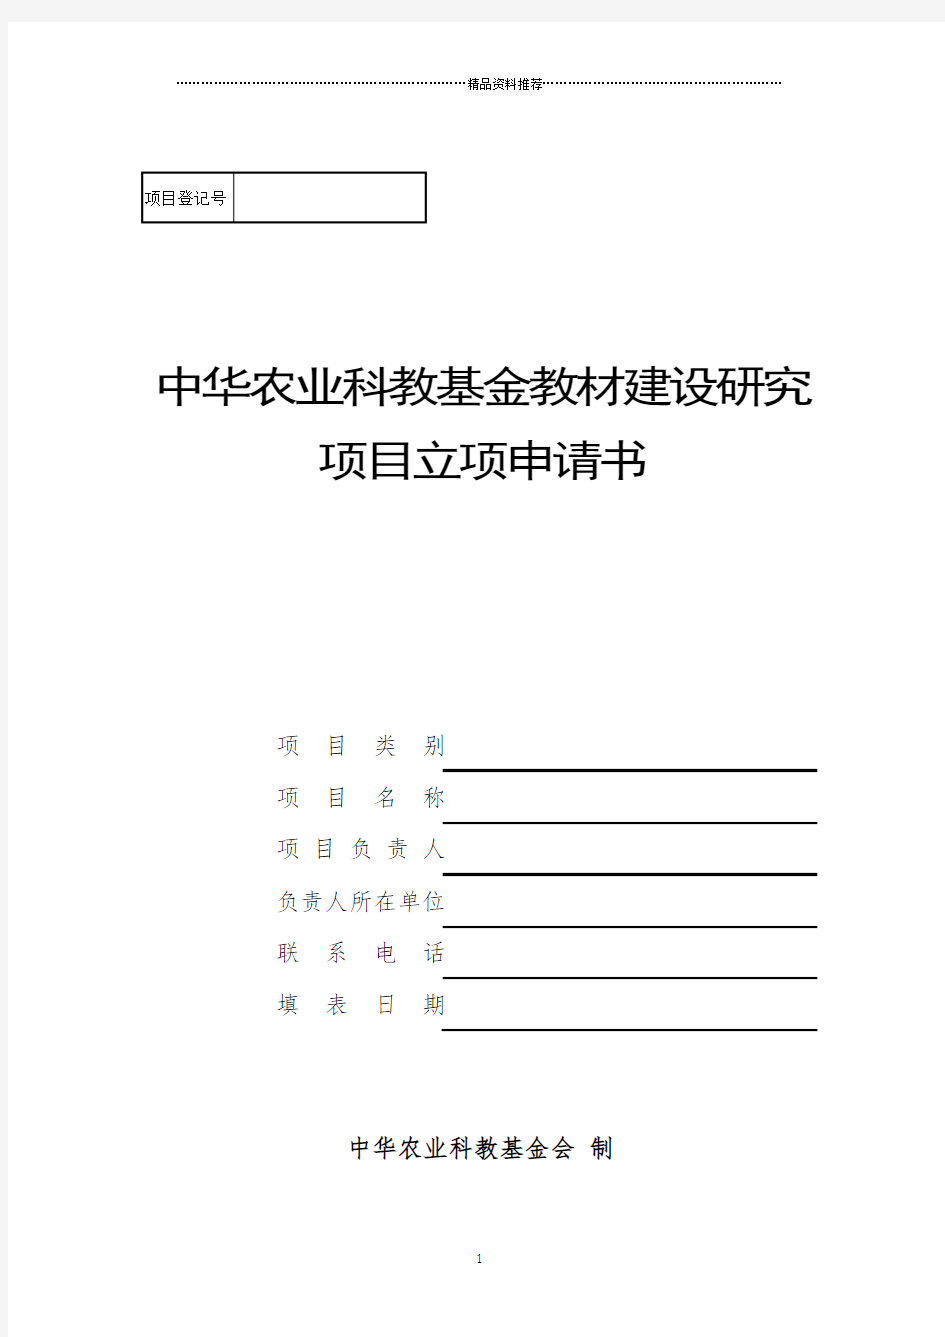 中华农业科教基金会教材建设研究项目立项申请书